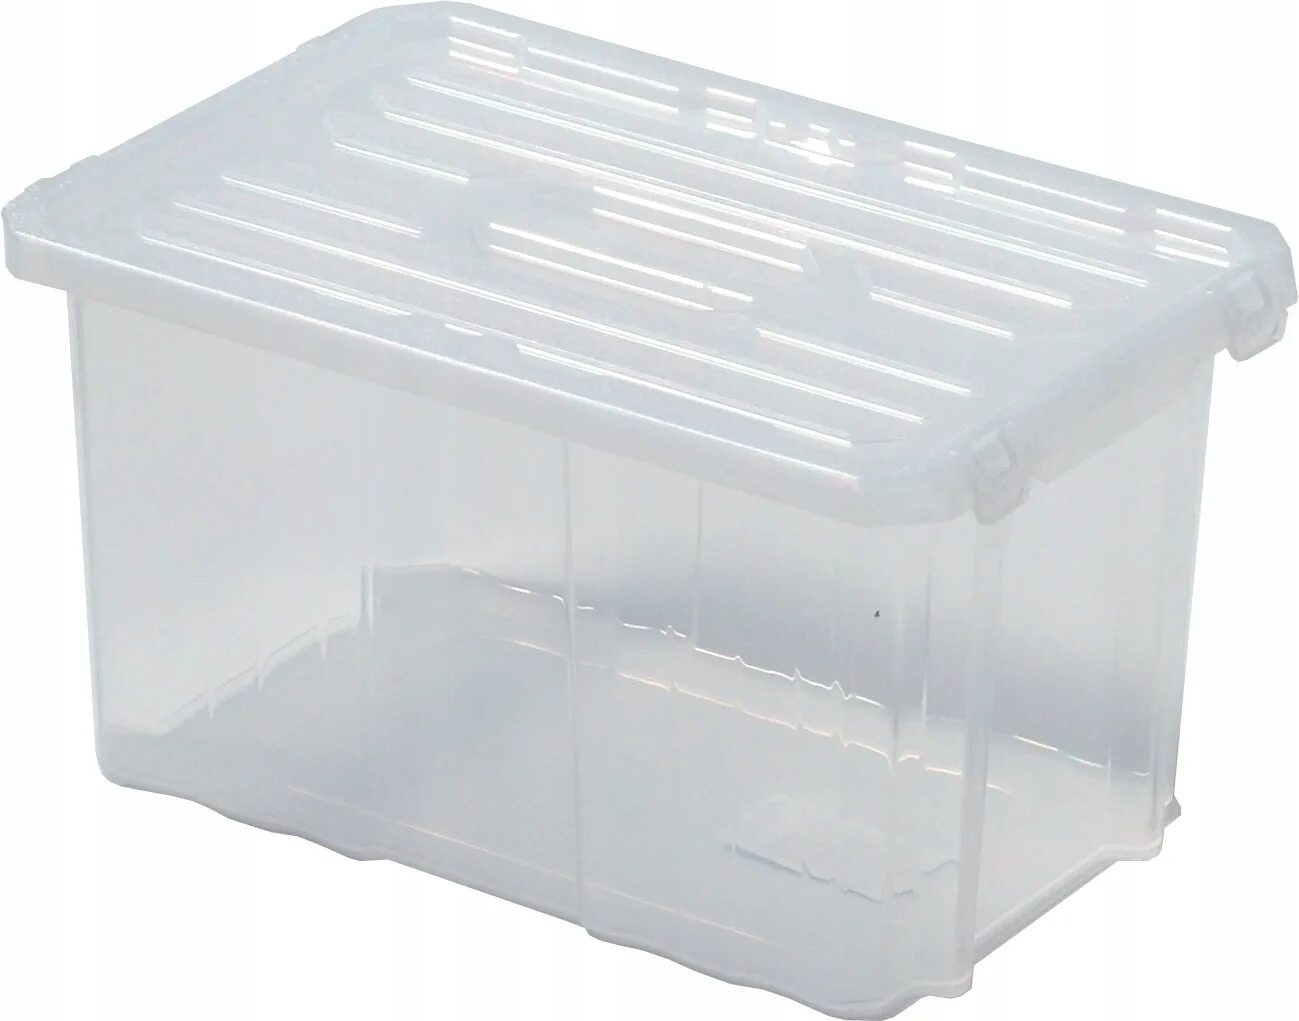 Где купить пластиковый контейнер. ЛМР пласт контейнер 10 л. Контейнер пластиковый Rox Box 35л. Контейнер 31на1-gcube(150 оон2"112-20-1). Ящик пластиковый 30х30х30.